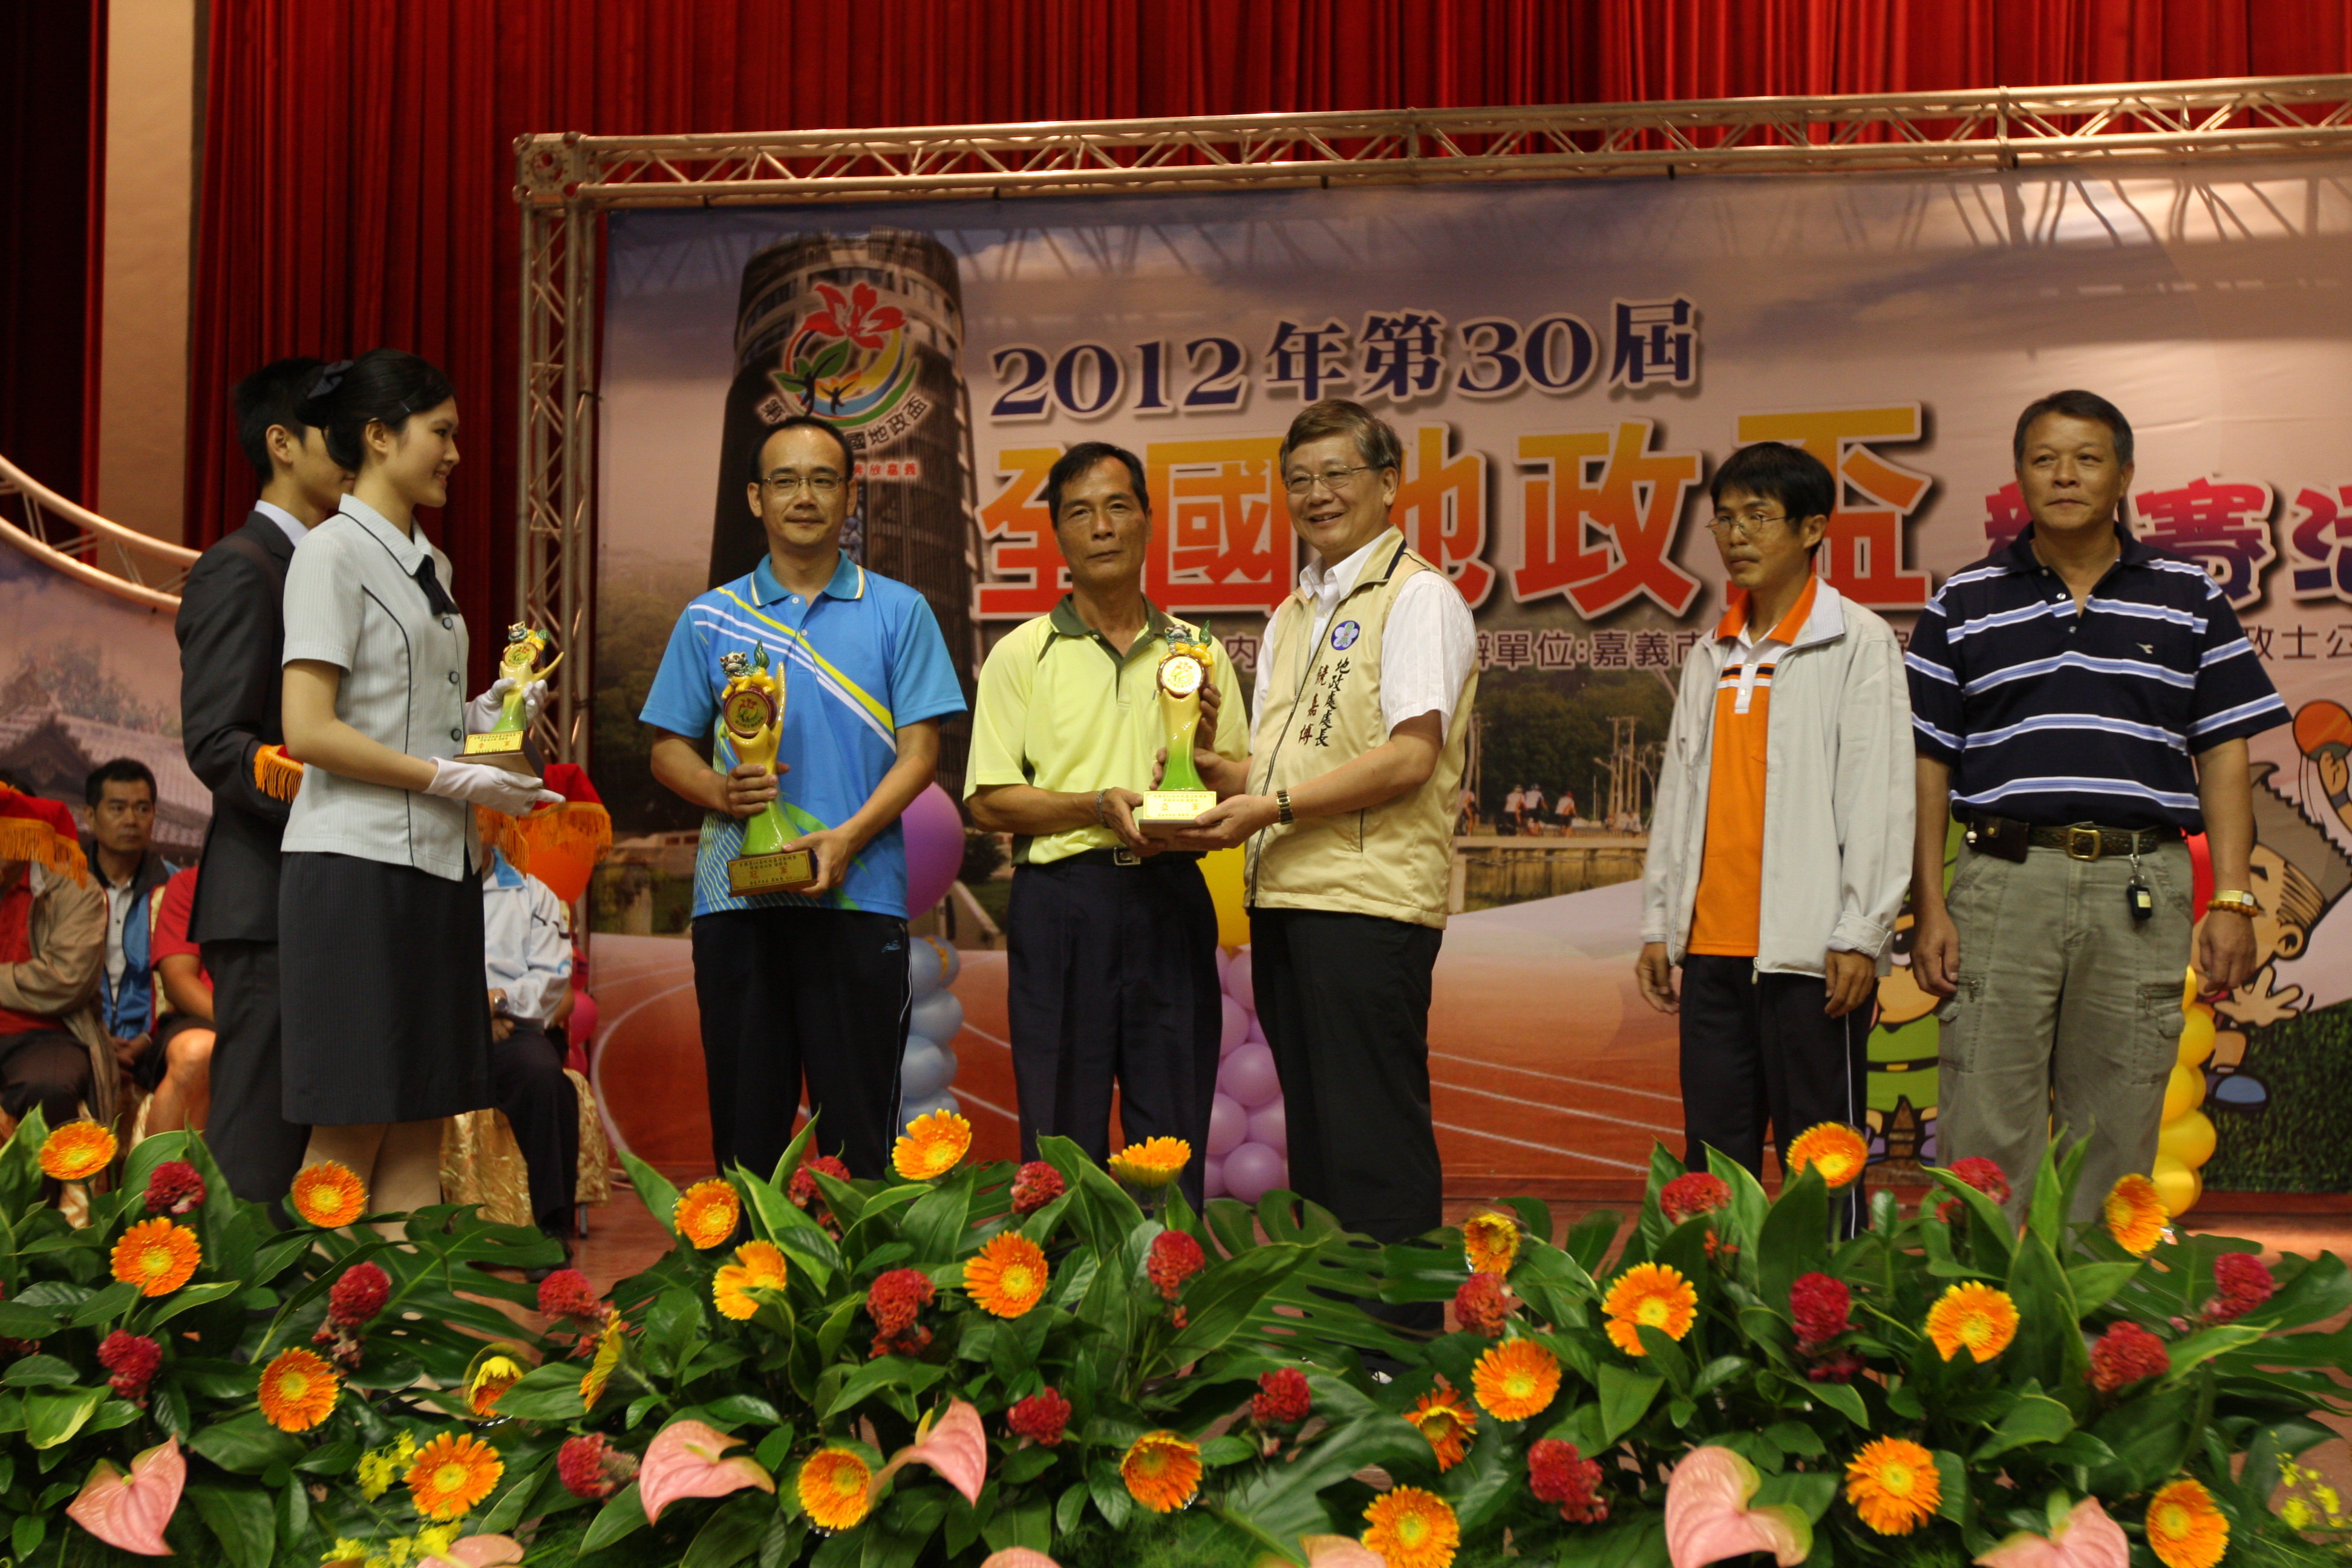 保齡球團體組榮獲第2名郭枝明代表領獎